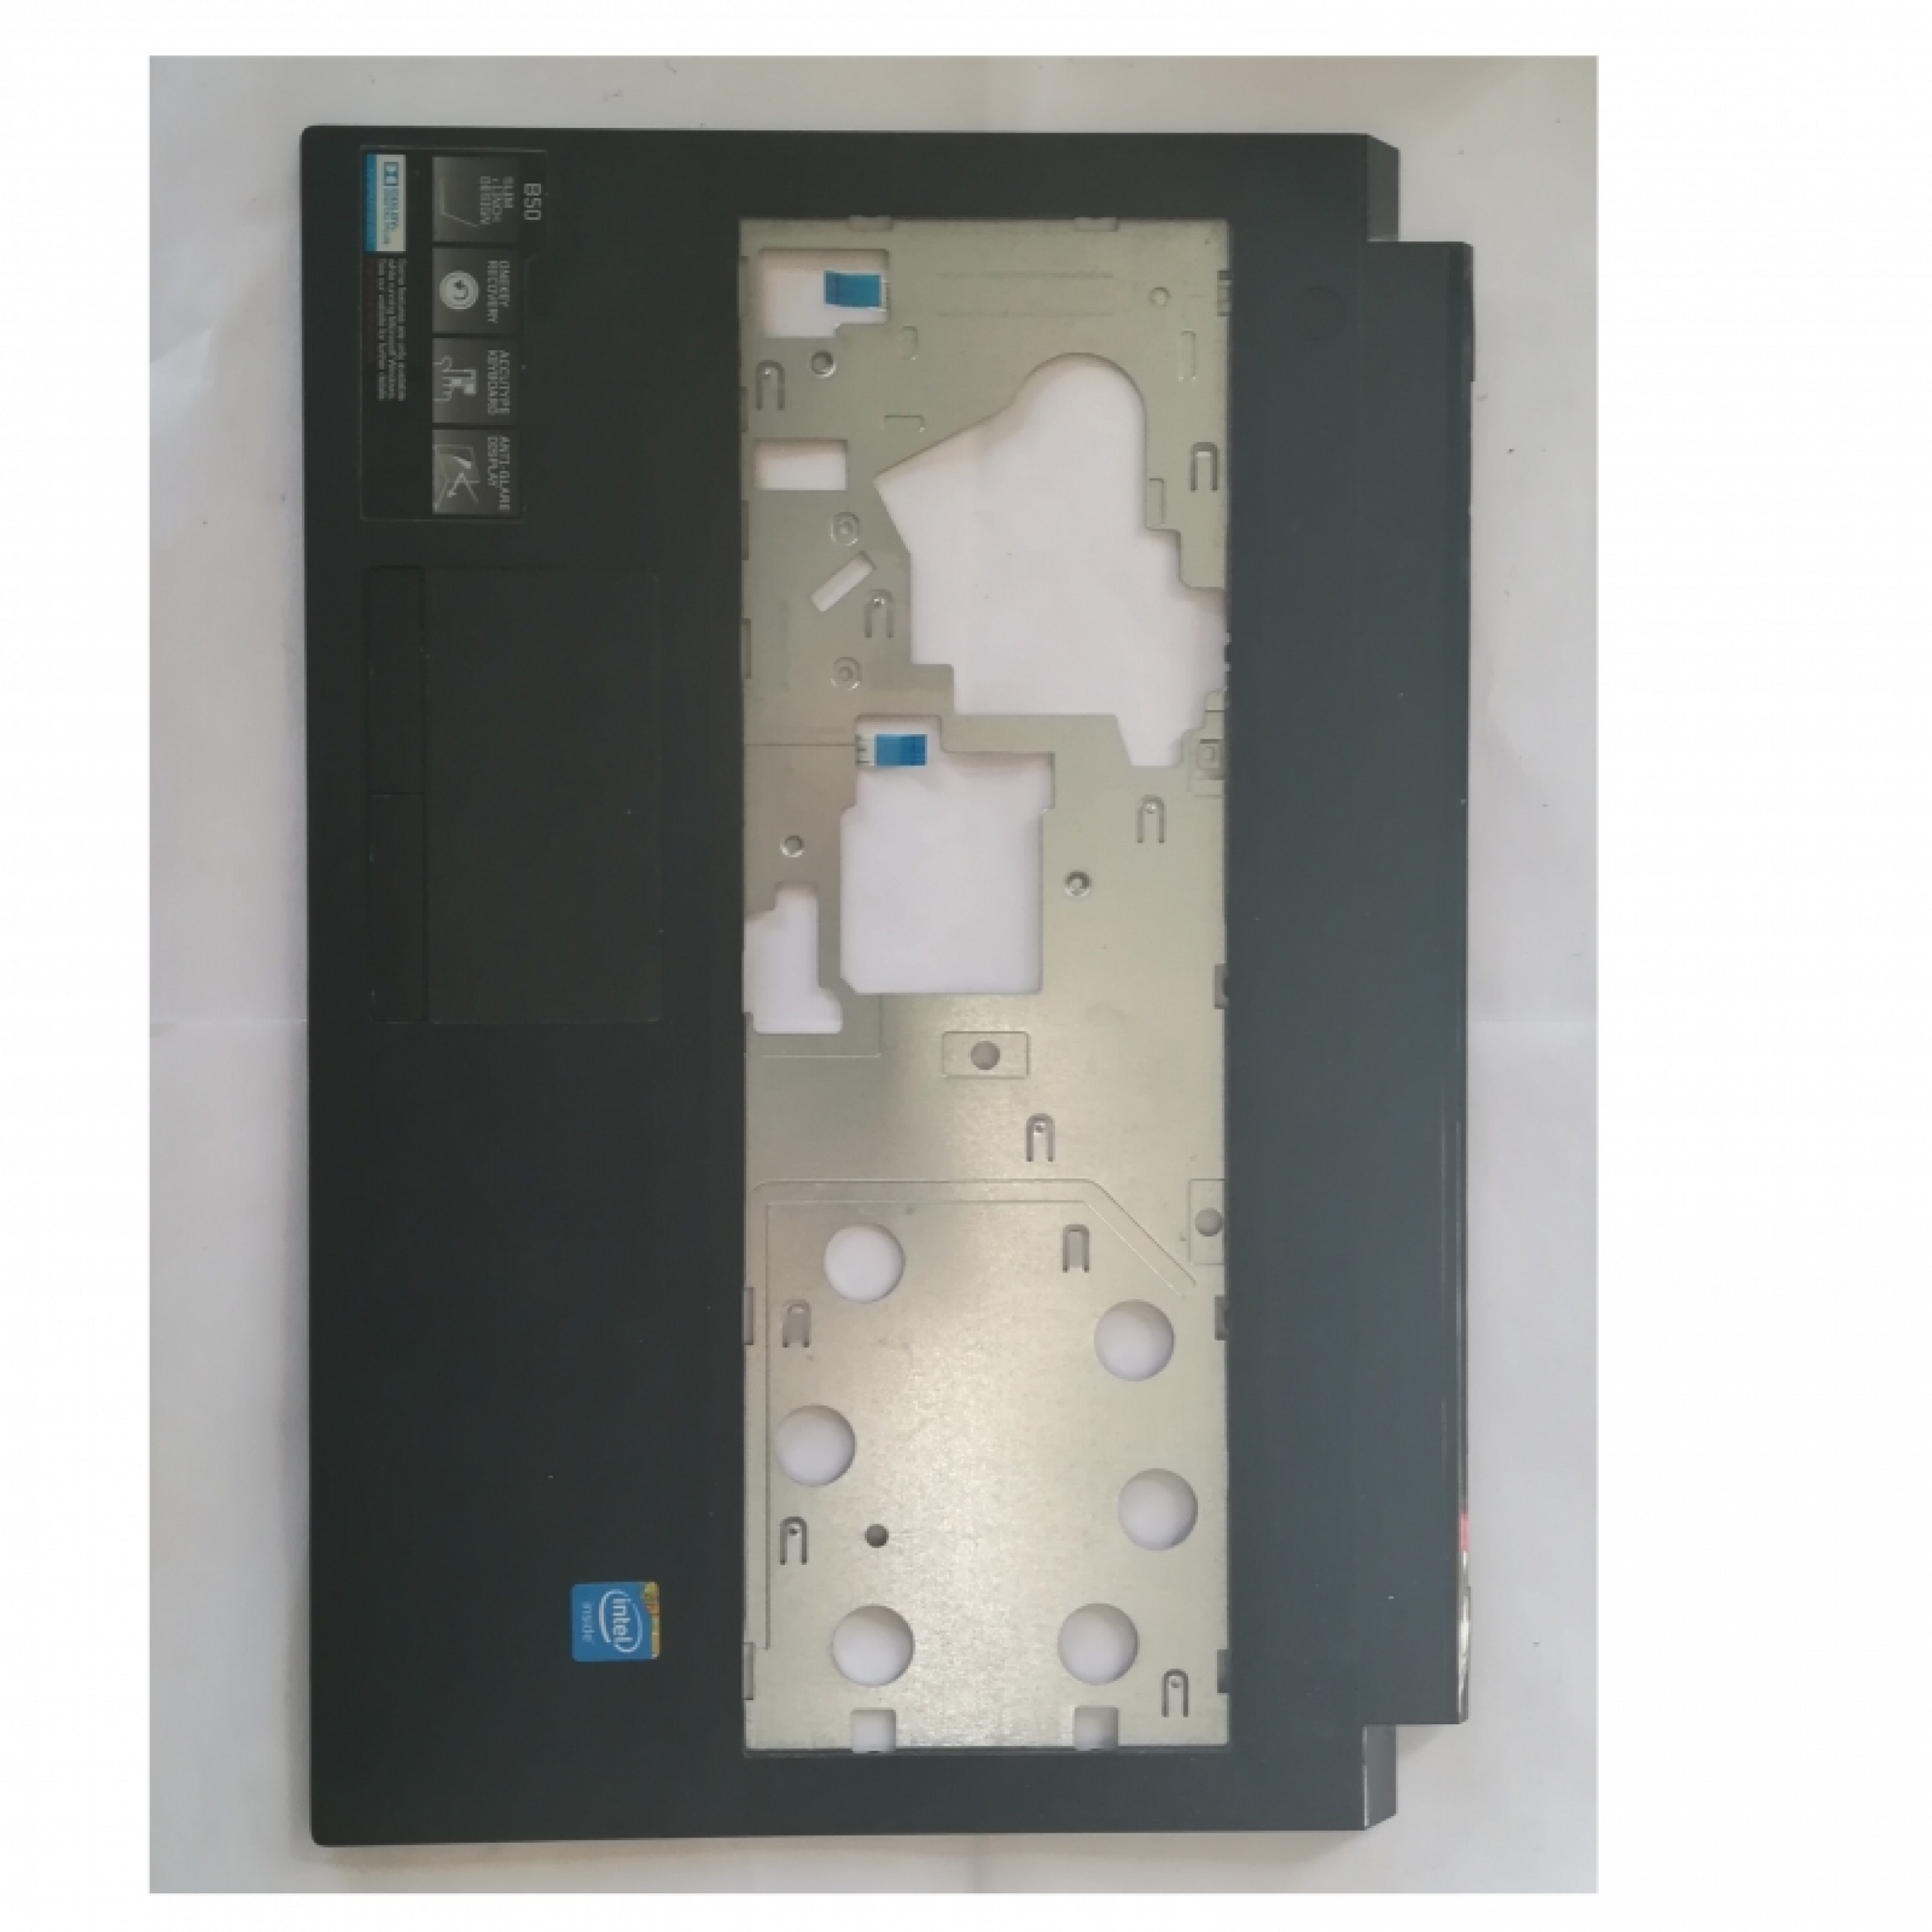 4 -  Scocche complete Lenovo B50-30 + casse touch pad power botton webcam